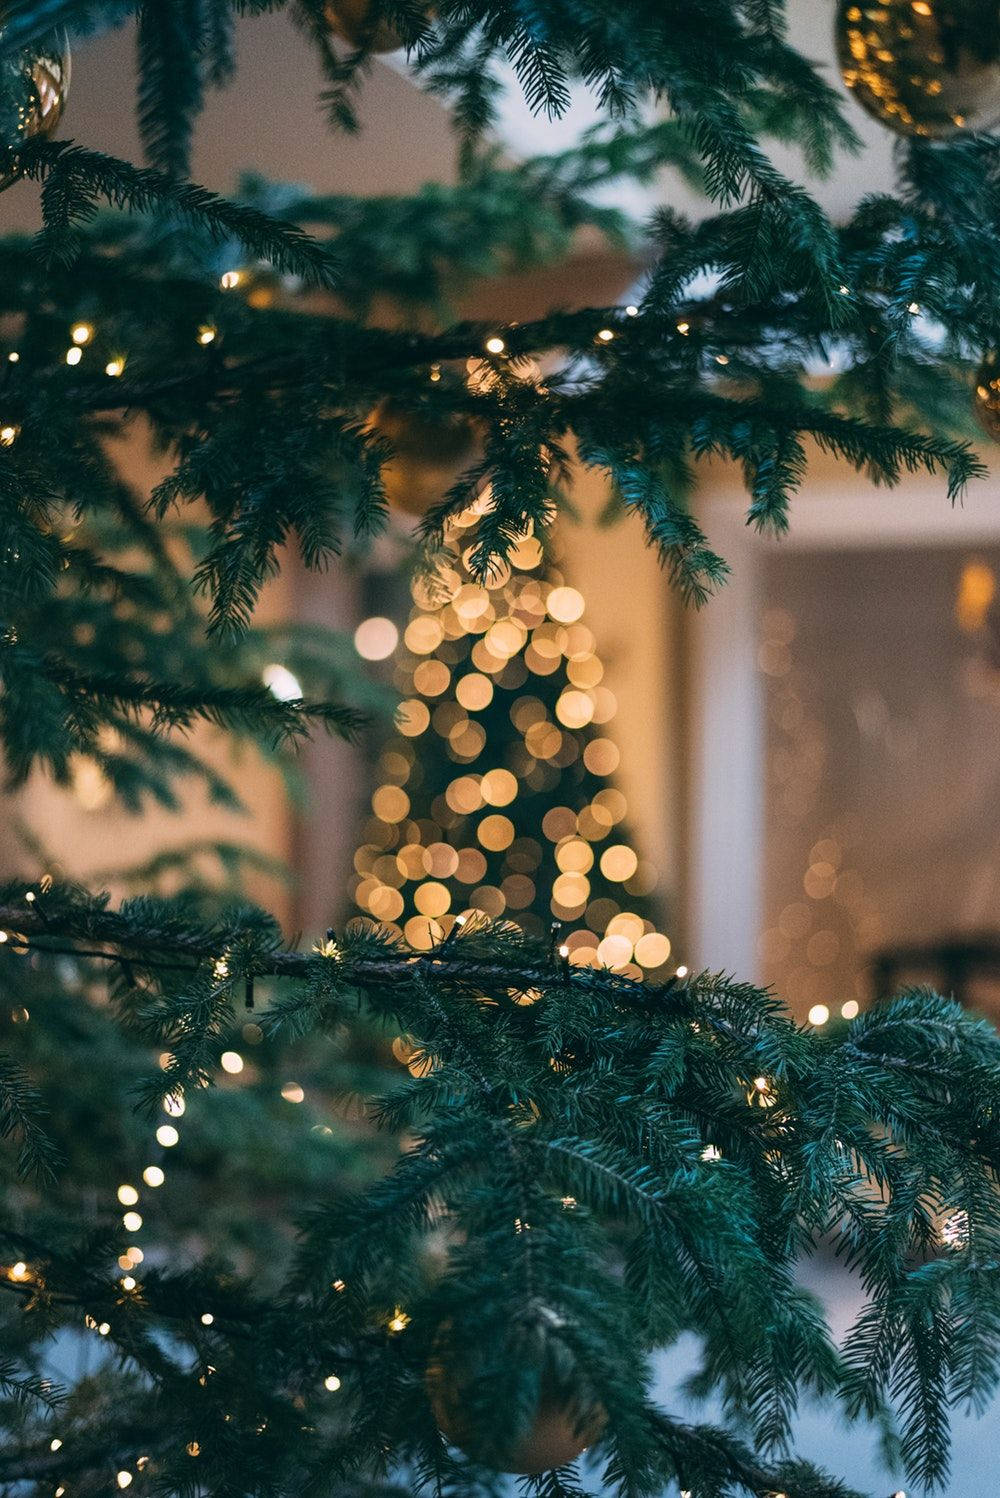 Festive Season Christmas Tree Close Up Shot Wallpaper